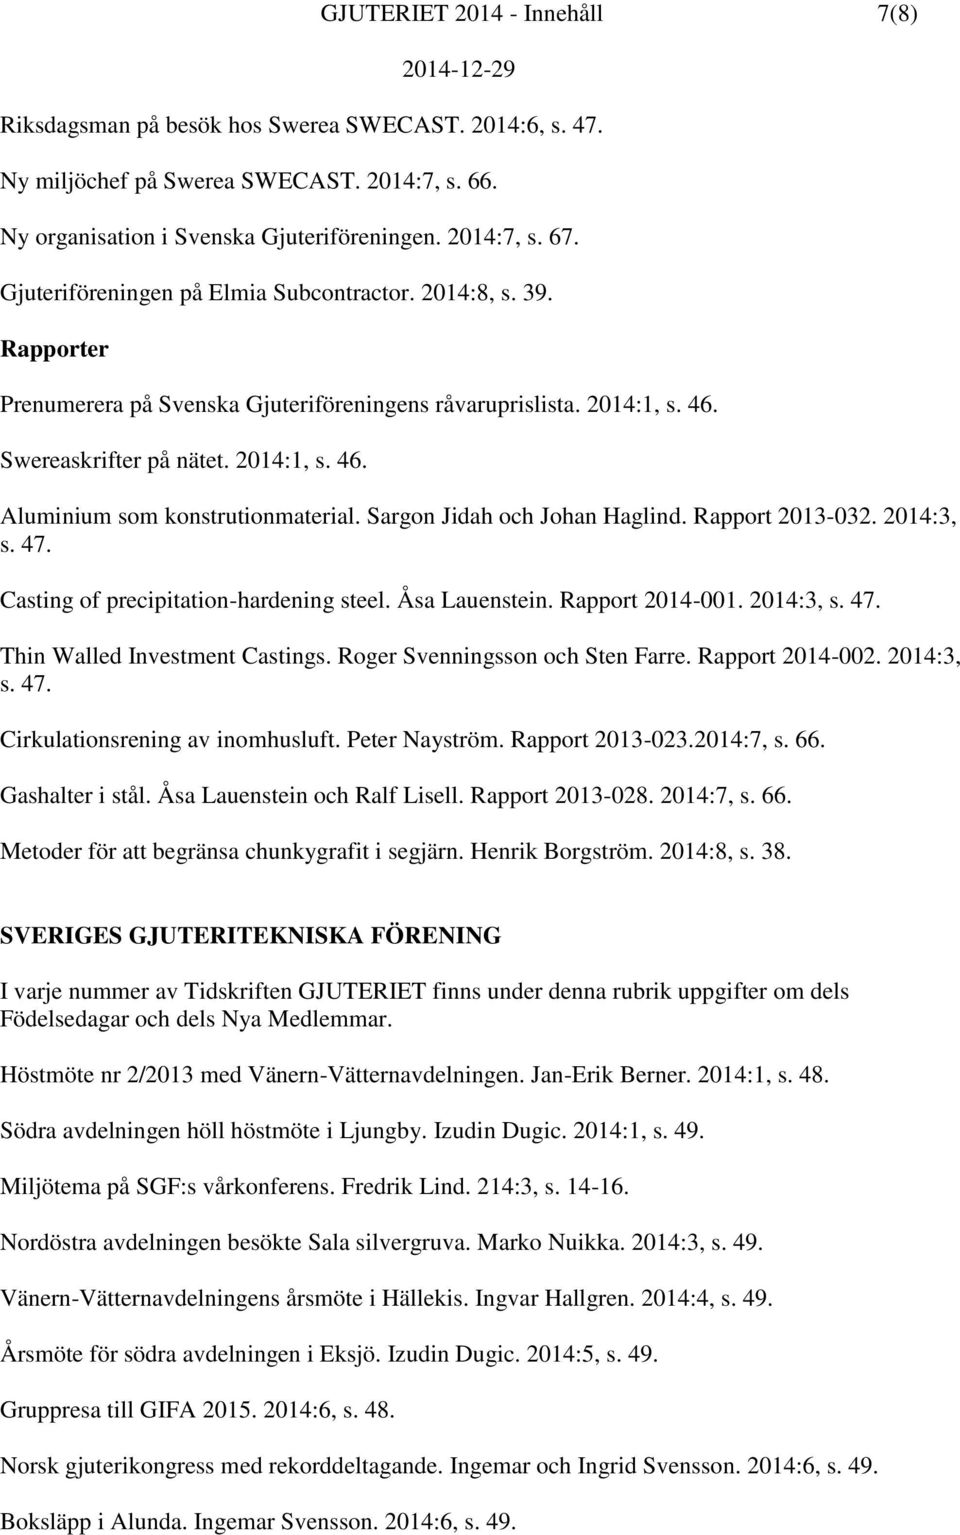 Sargon Jidah och Johan Haglind. Rapport 2013-032. 2014:3, s. 47. Casting of precipitation-hardening steel. Åsa Lauenstein. Rapport 2014-001. 2014:3, s. 47. Thin Walled Investment Castings.